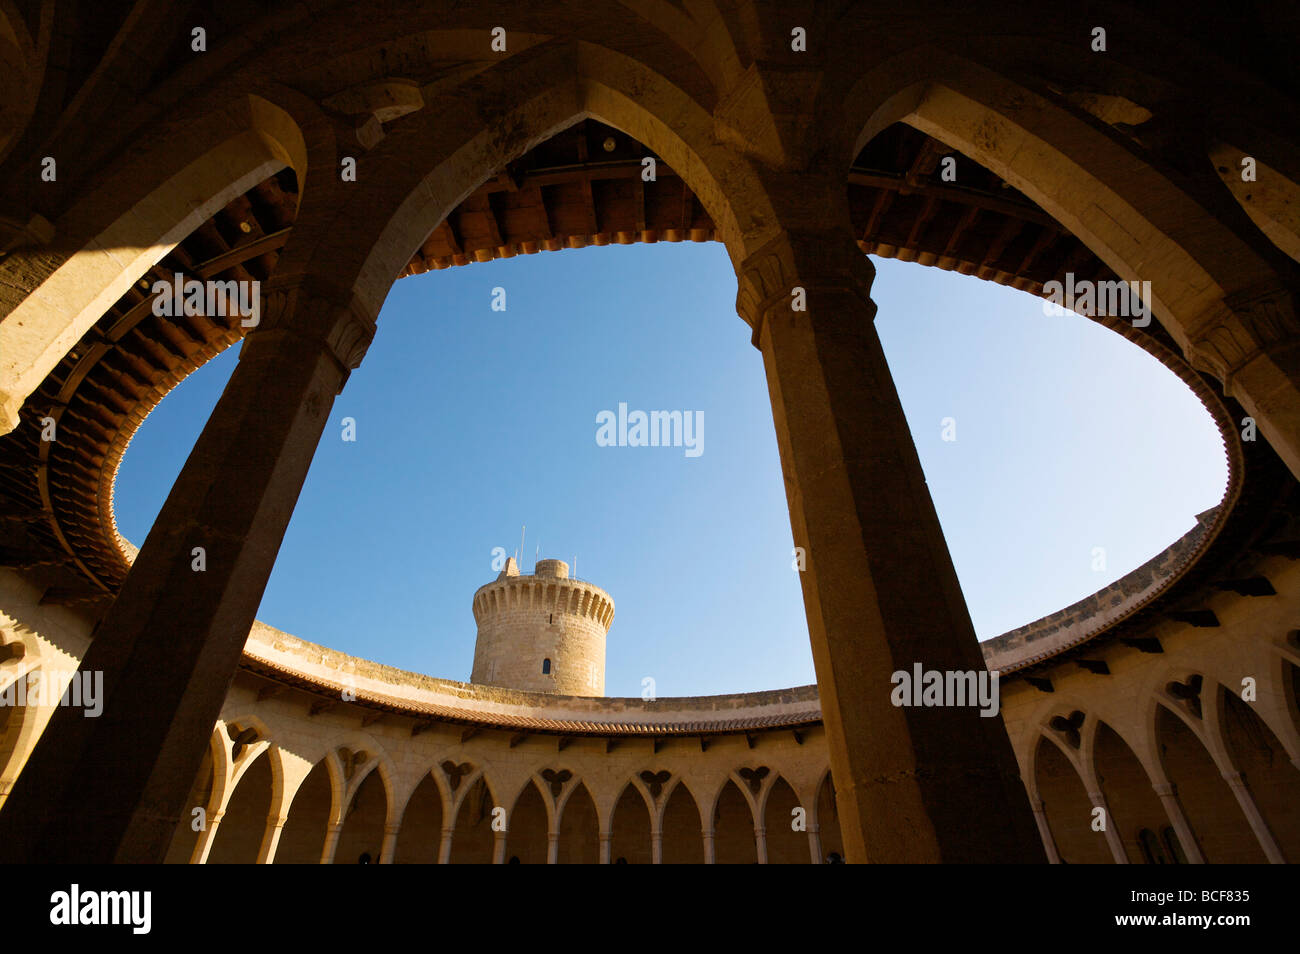 Castell de Bellver, Palma, Mallorca, Spain Stock Photo